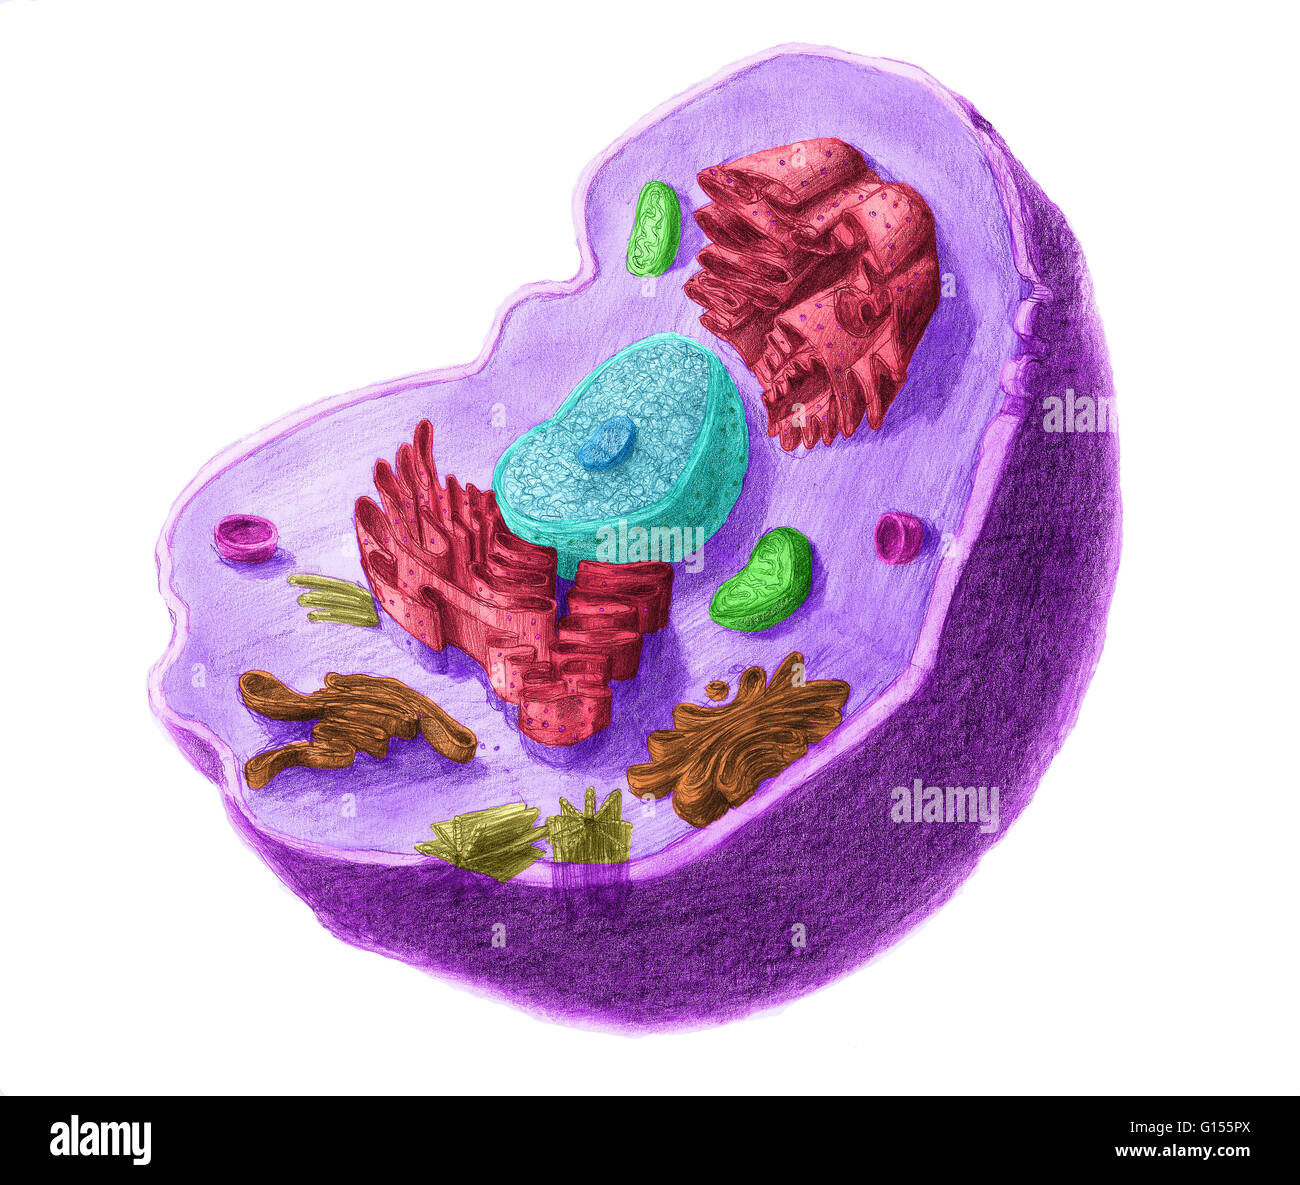 Colore illustartion avanzata di una cellula animale. La cella ha un nucleo nel suo centro, che contiene chromatine costituito da DNA e nucleole, composto da RNA e proteine. Attorno al nucleo troviamo il reticolo endoplasmatico, quindi l'apparato di Golgi di apparecchiatura Foto Stock